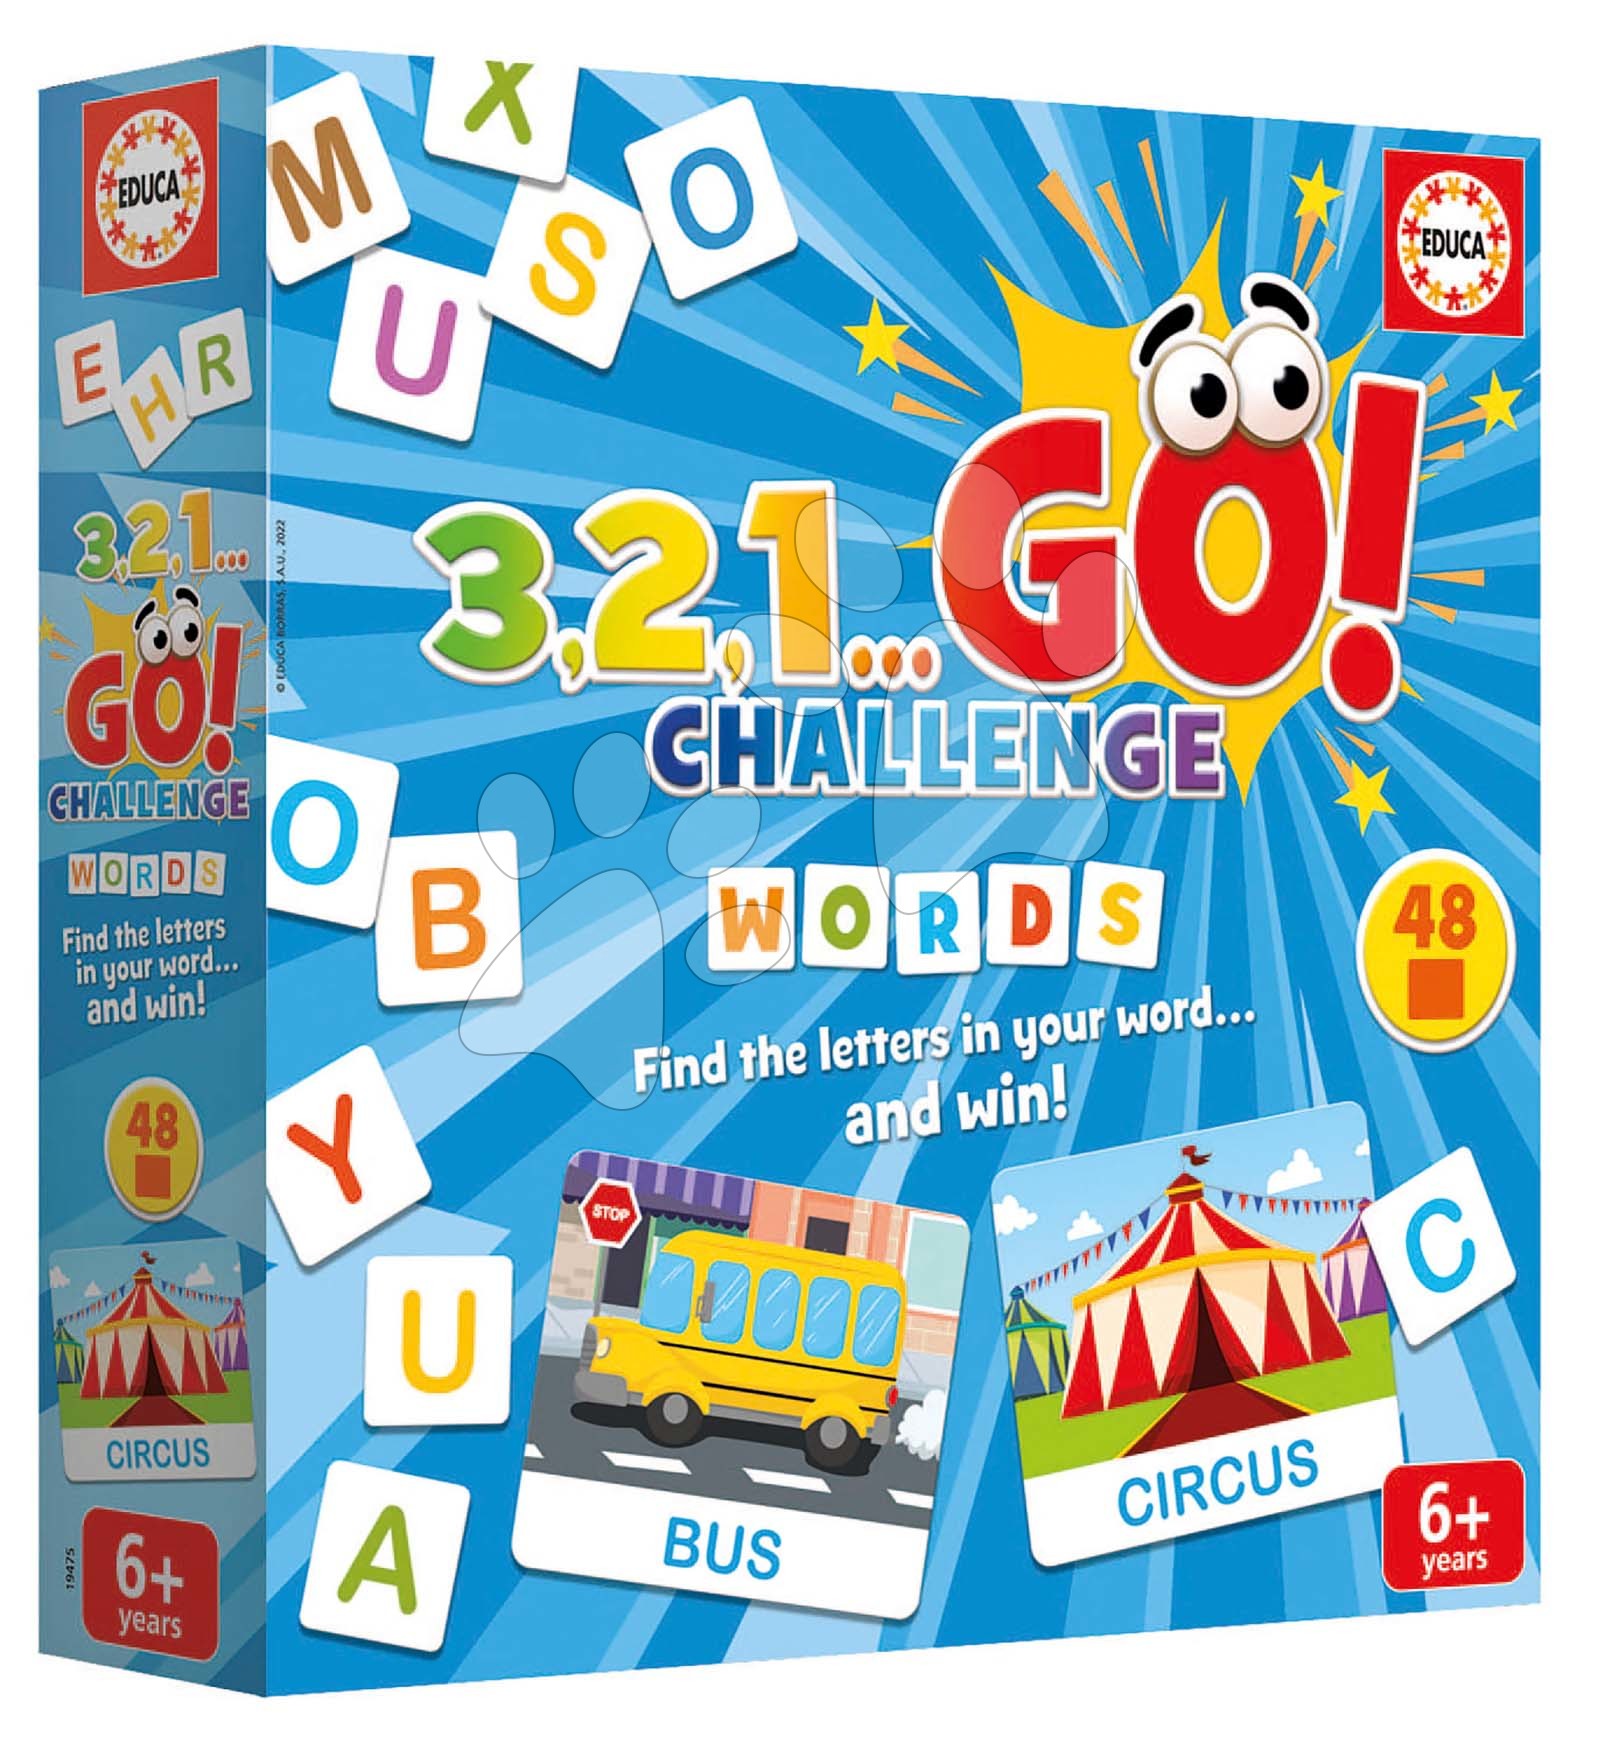 Společenská hra Slova 3,2,1... Go! Challenge Words Educa 48 slovíček 150 písmen anglicky od 6 let